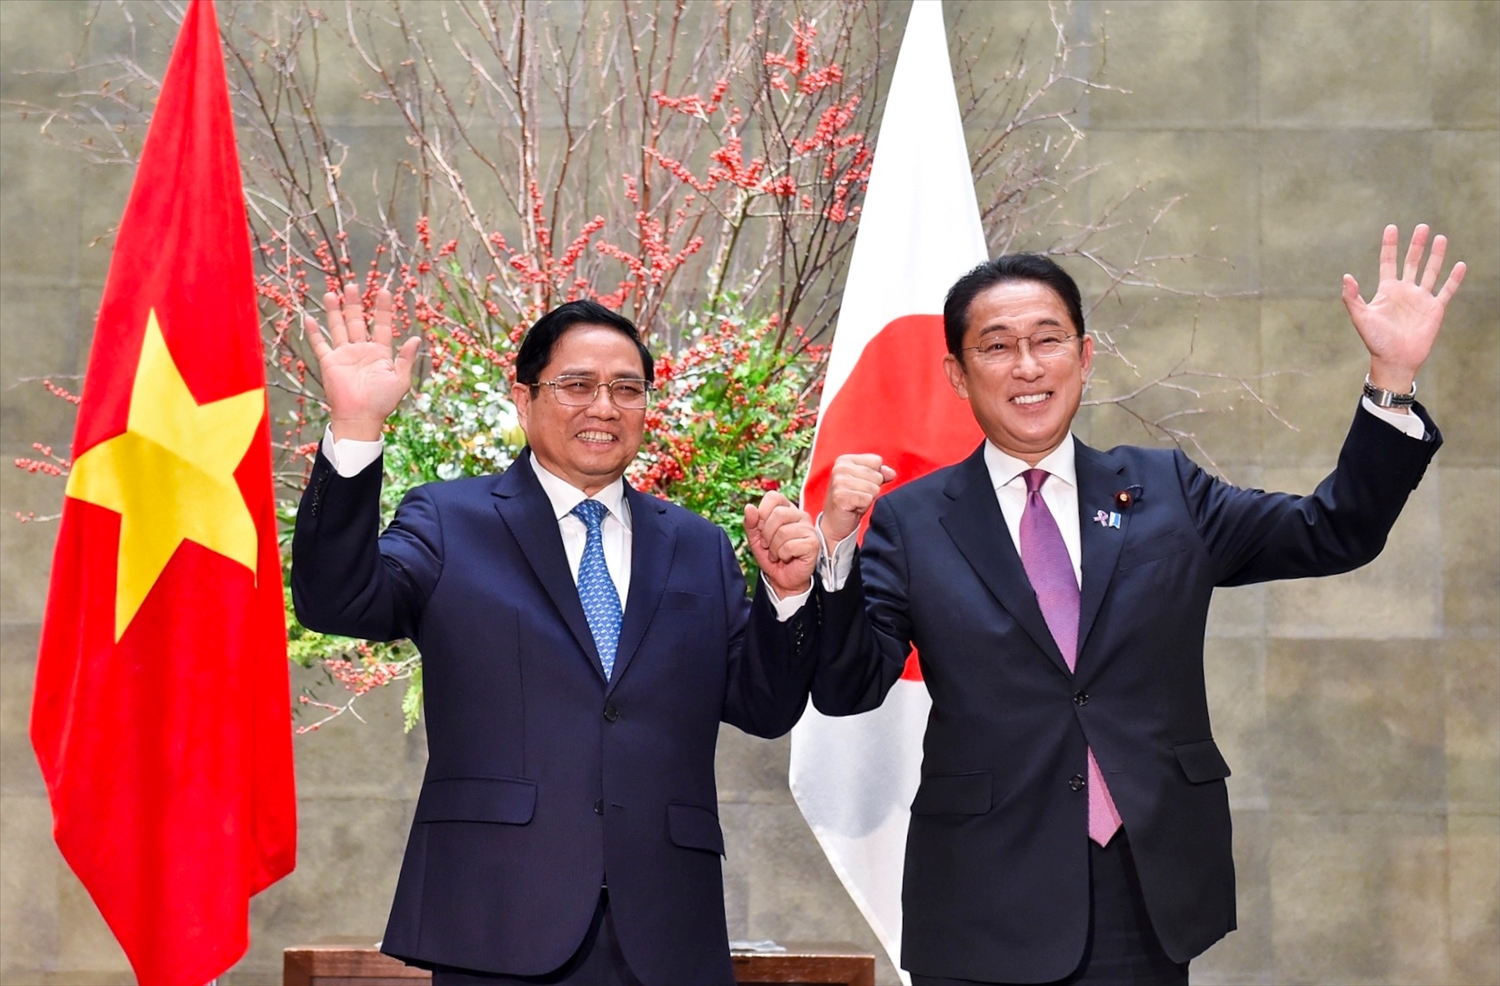 Chuyến thăm chính thức Nhật Bản của Thủ tướng Phạm Minh Chính từ ngày 22-25/11 theo lời mời của Thủ tướng Nhật Bản Kishida Fumio một lần nữa khẳng định vị thế, uy tín của Việt Nam trong khu vực và trên thế giới. Ảnh: VGP/Nhật Bắc